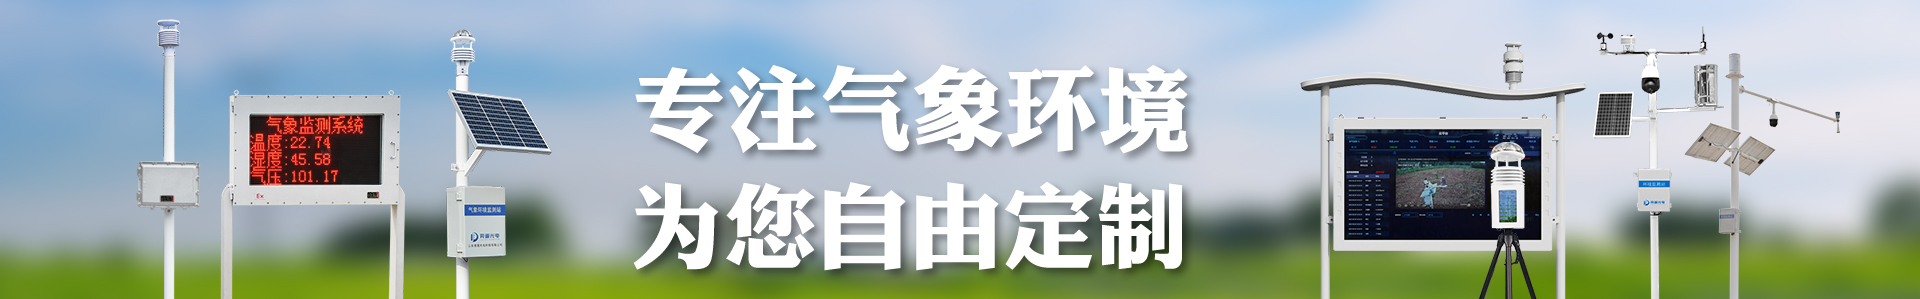 负氧离子传感器-大气环境传感器-自动气象站-小型气象站-防爆气象站-光伏气象站-南宫NG·28(中国)官方网站